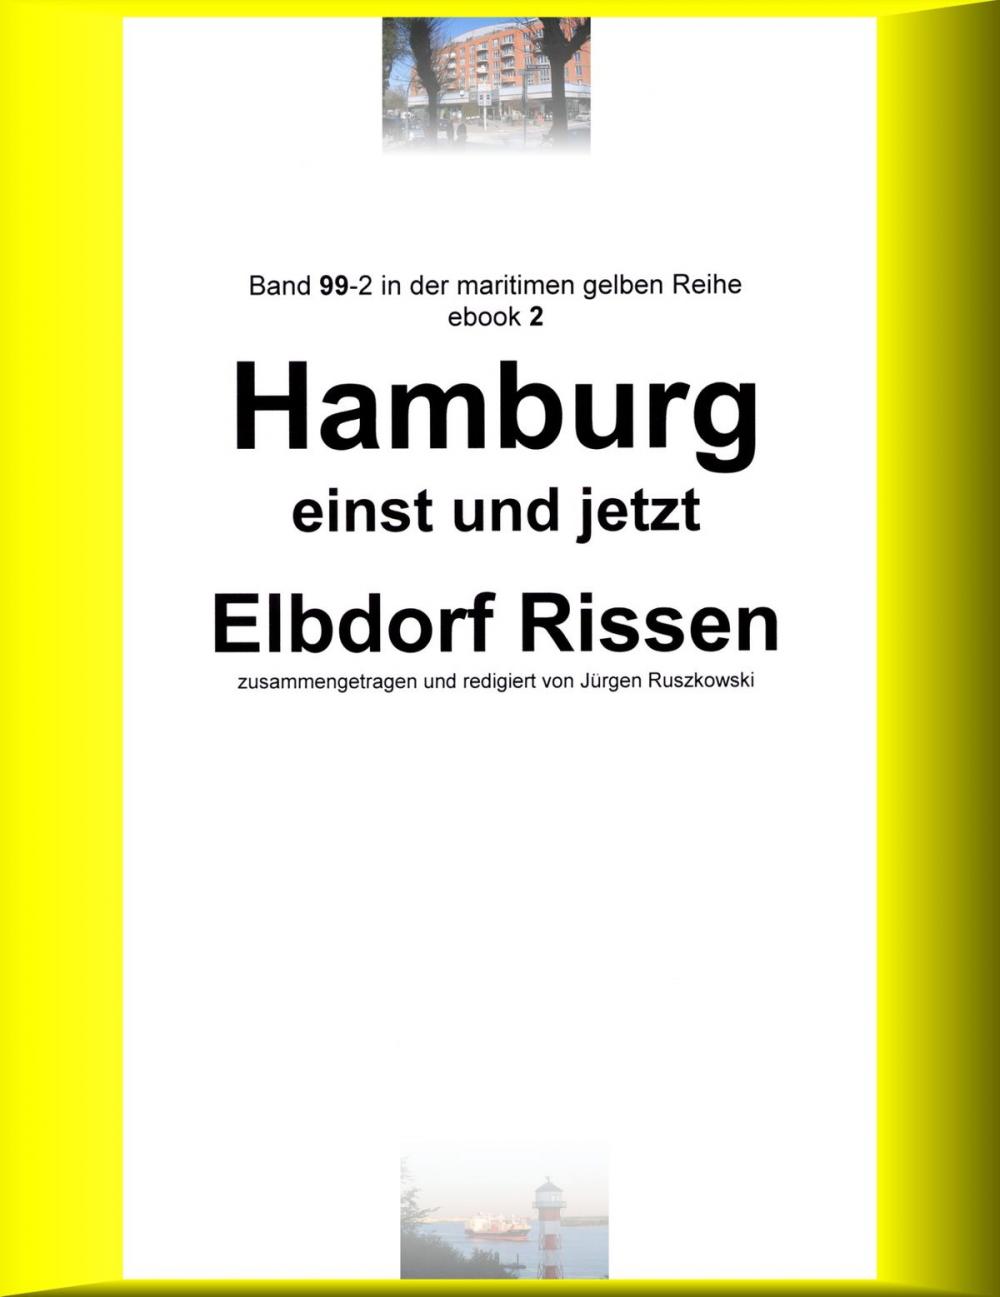 Big bigCover of Hamburg einst und jetzt - Elbdorf Rissen - Teil 2